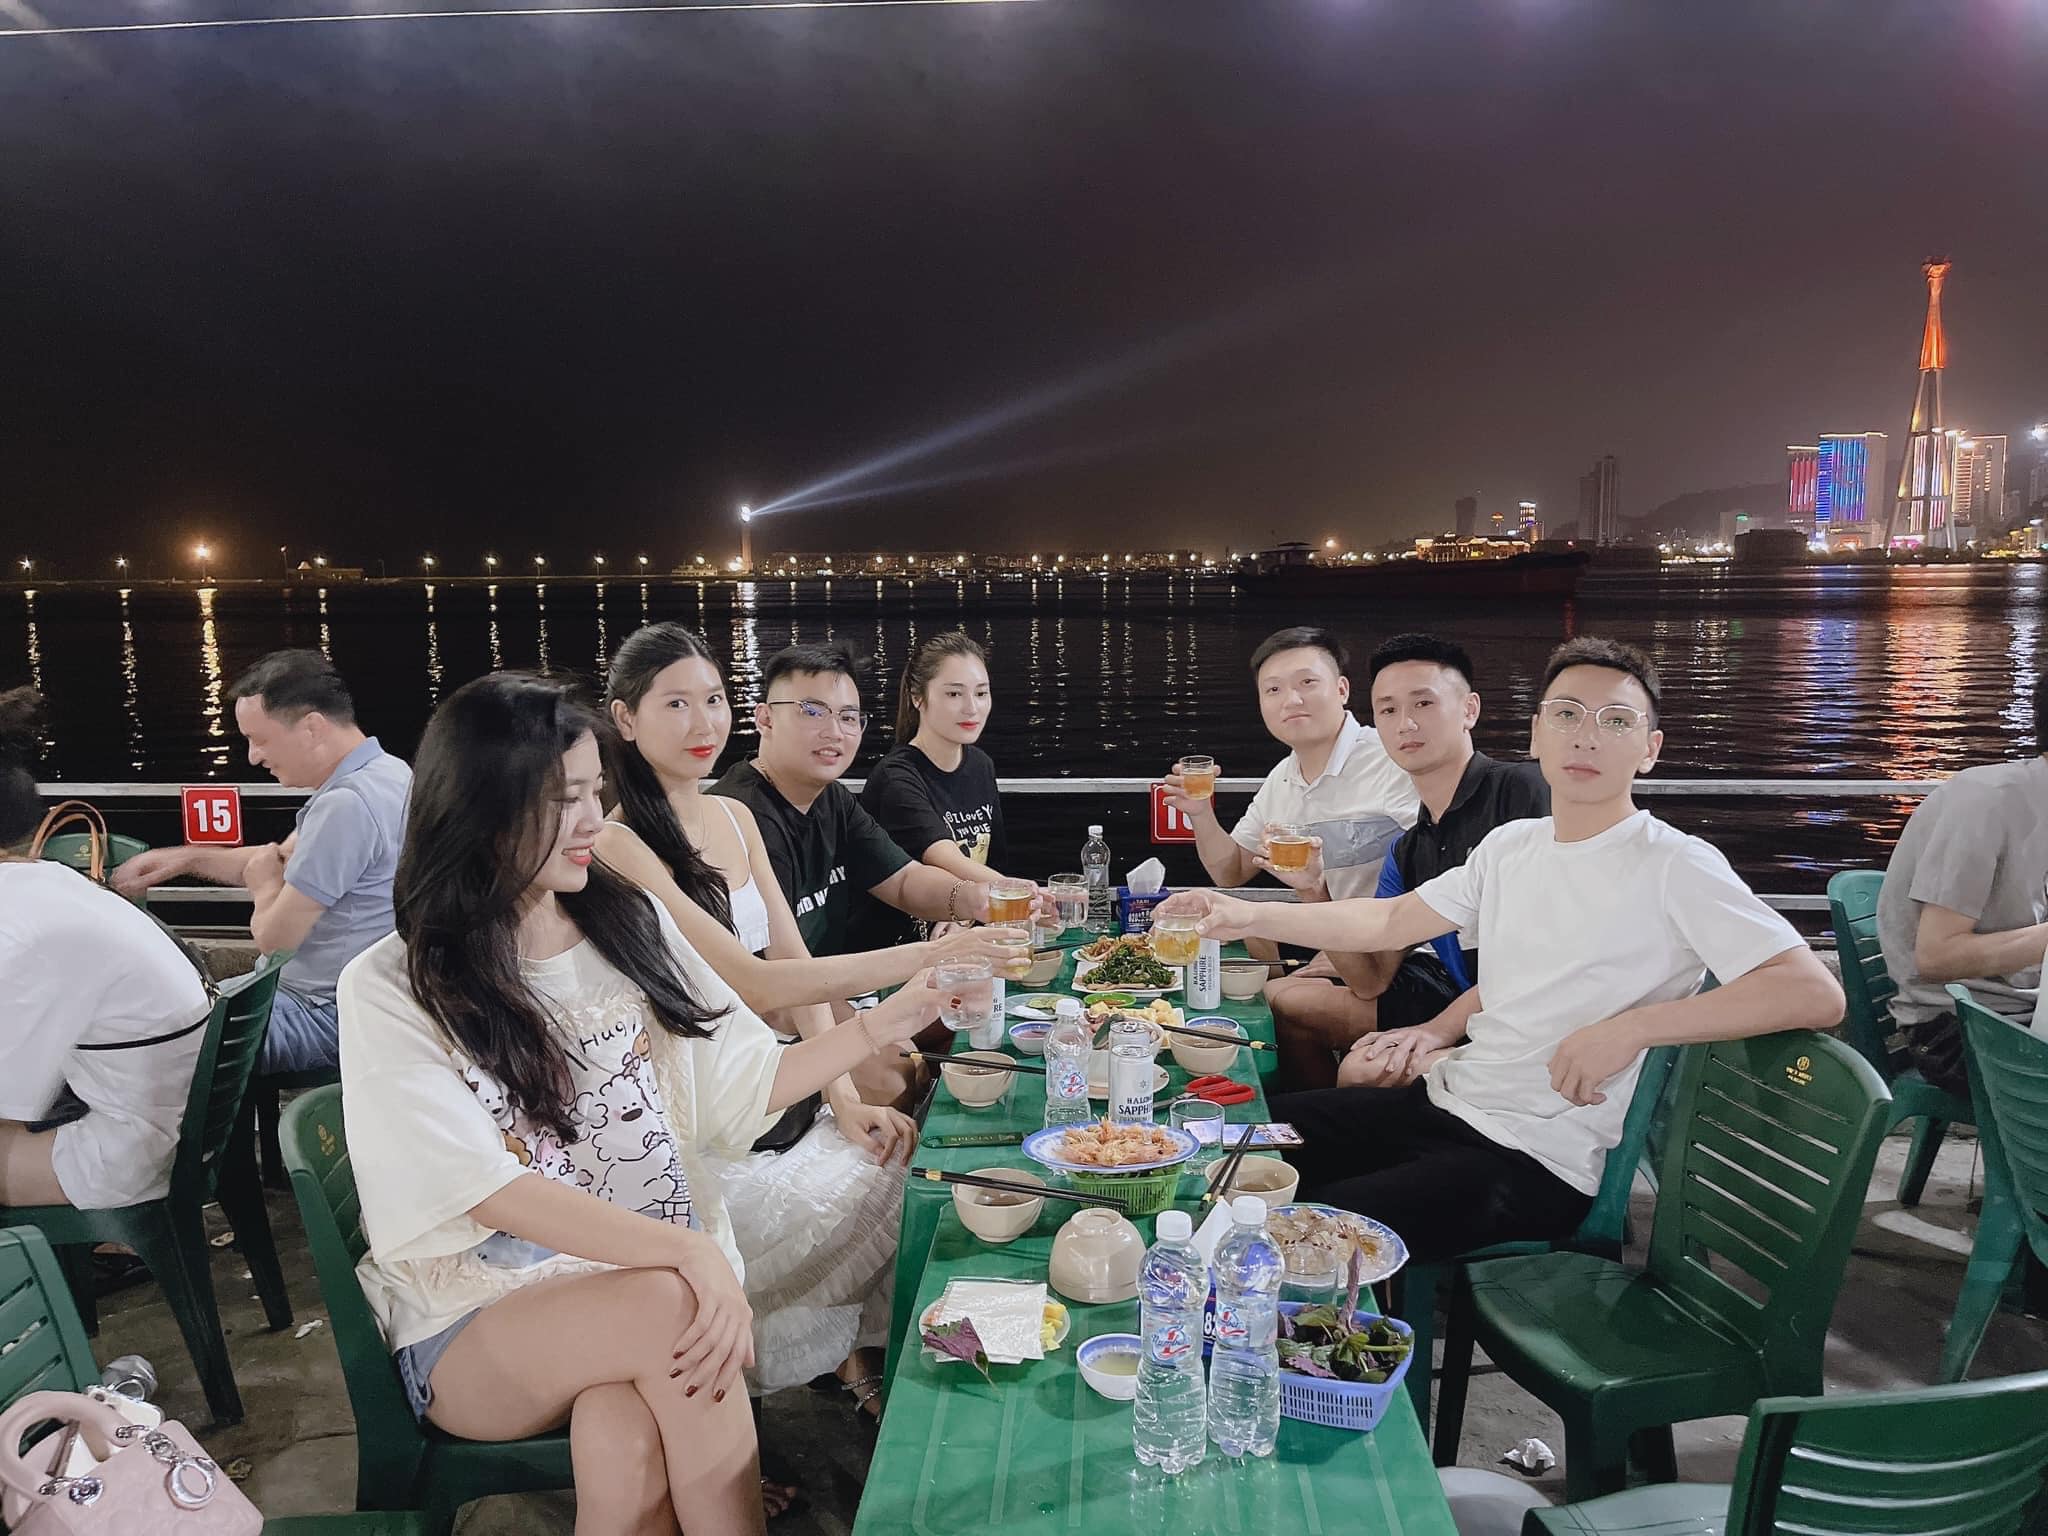 Bí quyết đi ăn hải sản tại các điểm du lịch của Quảng Ninh vào mùa cao điểm, đảm bảo ngon - bổ - rẻ, bạn đã biết chưa?